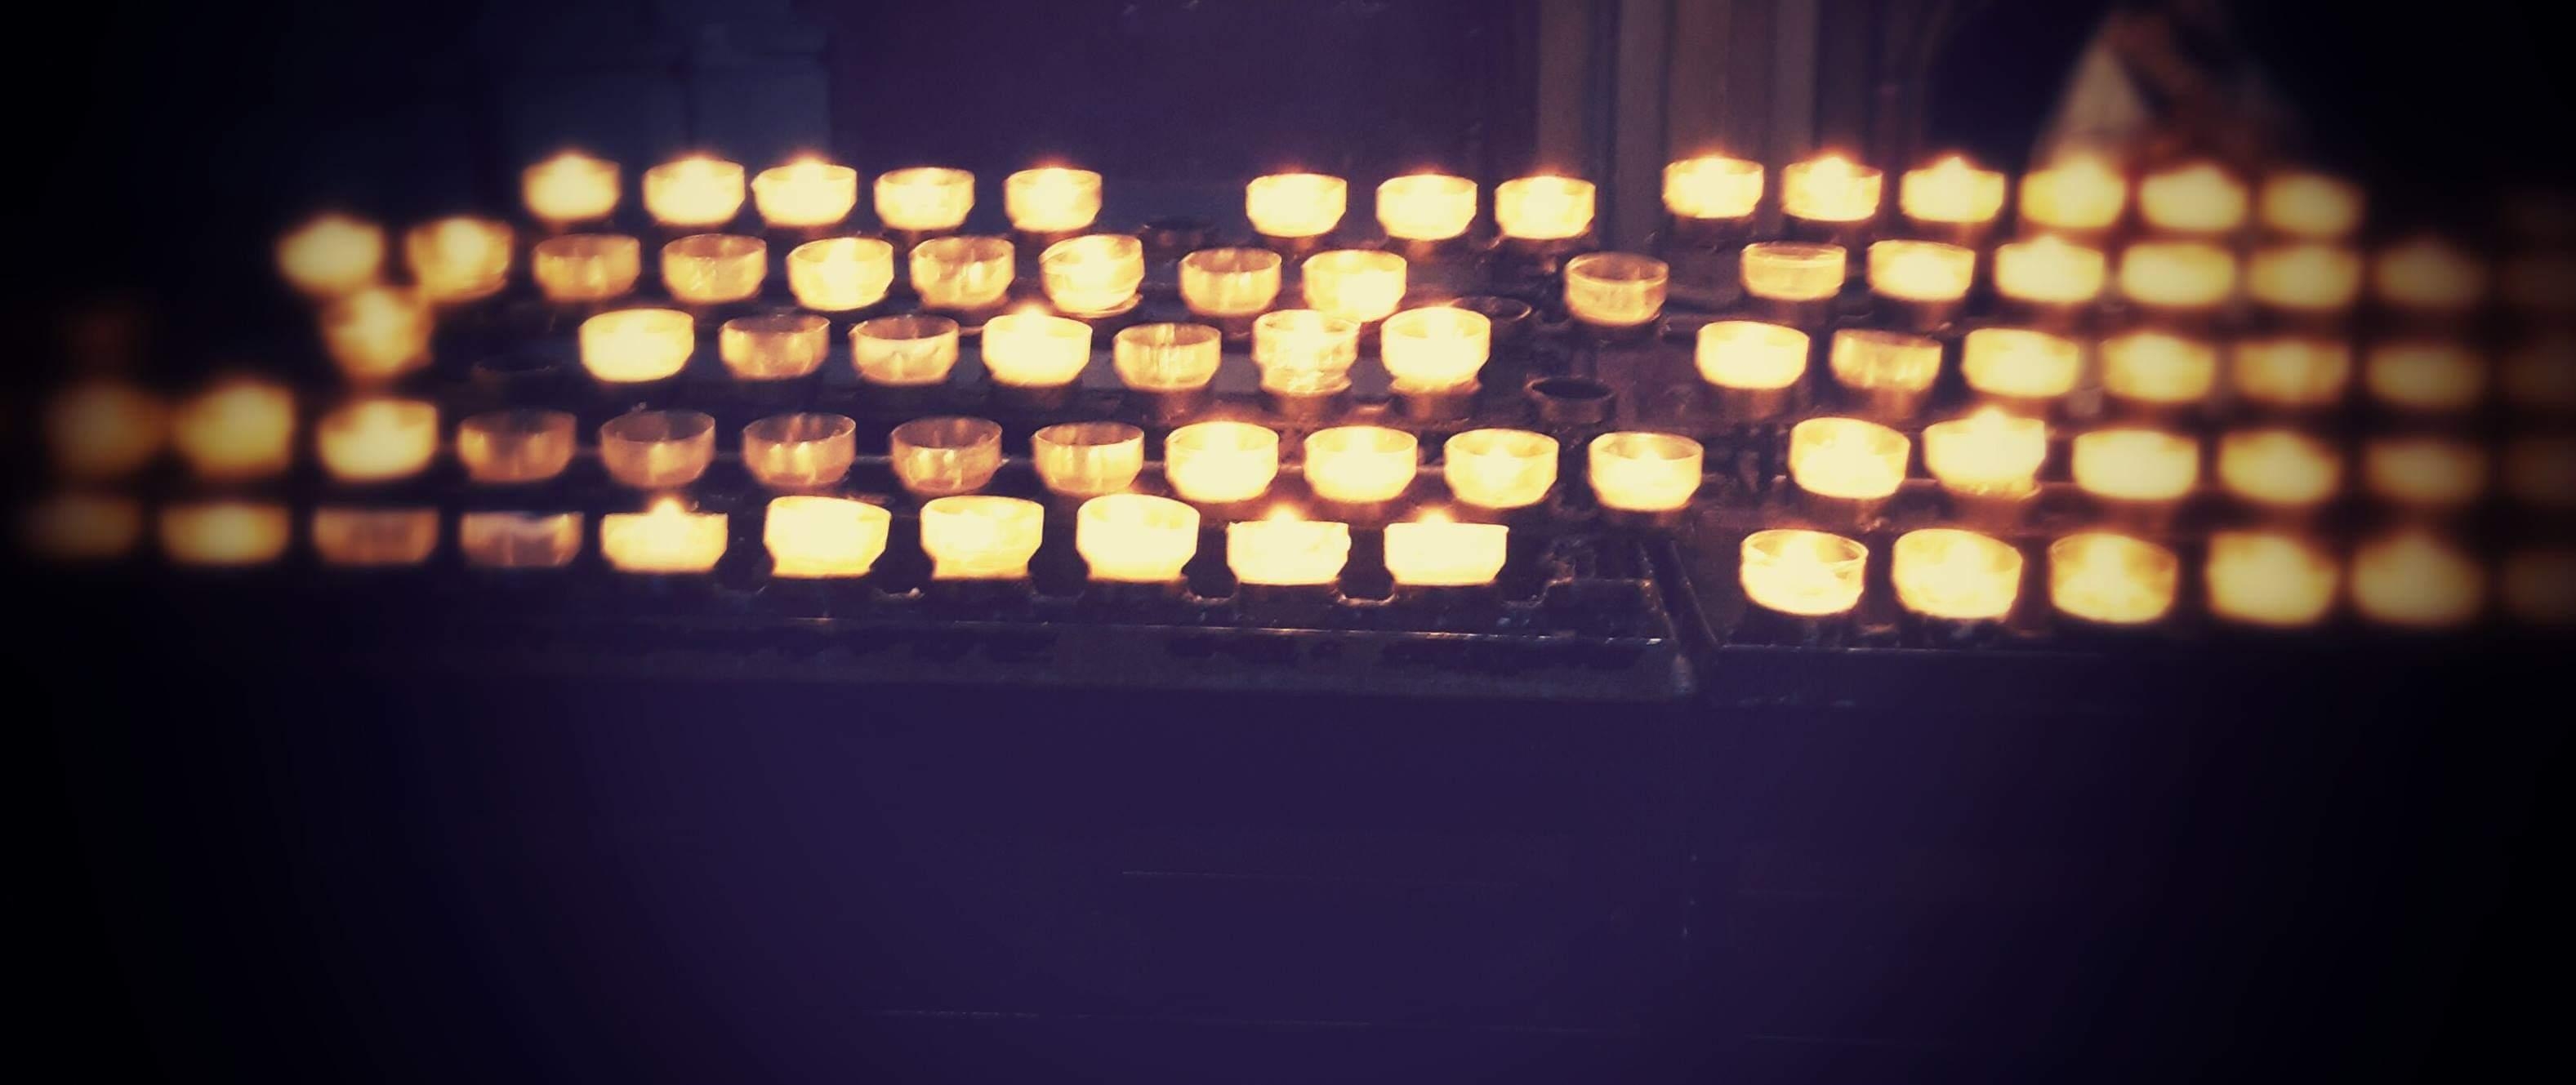 Ein kleiner Ruhepunkt in einer turbulenten Zeit (Kölner Dom).
#Kerzen
#Köln
#Dom
